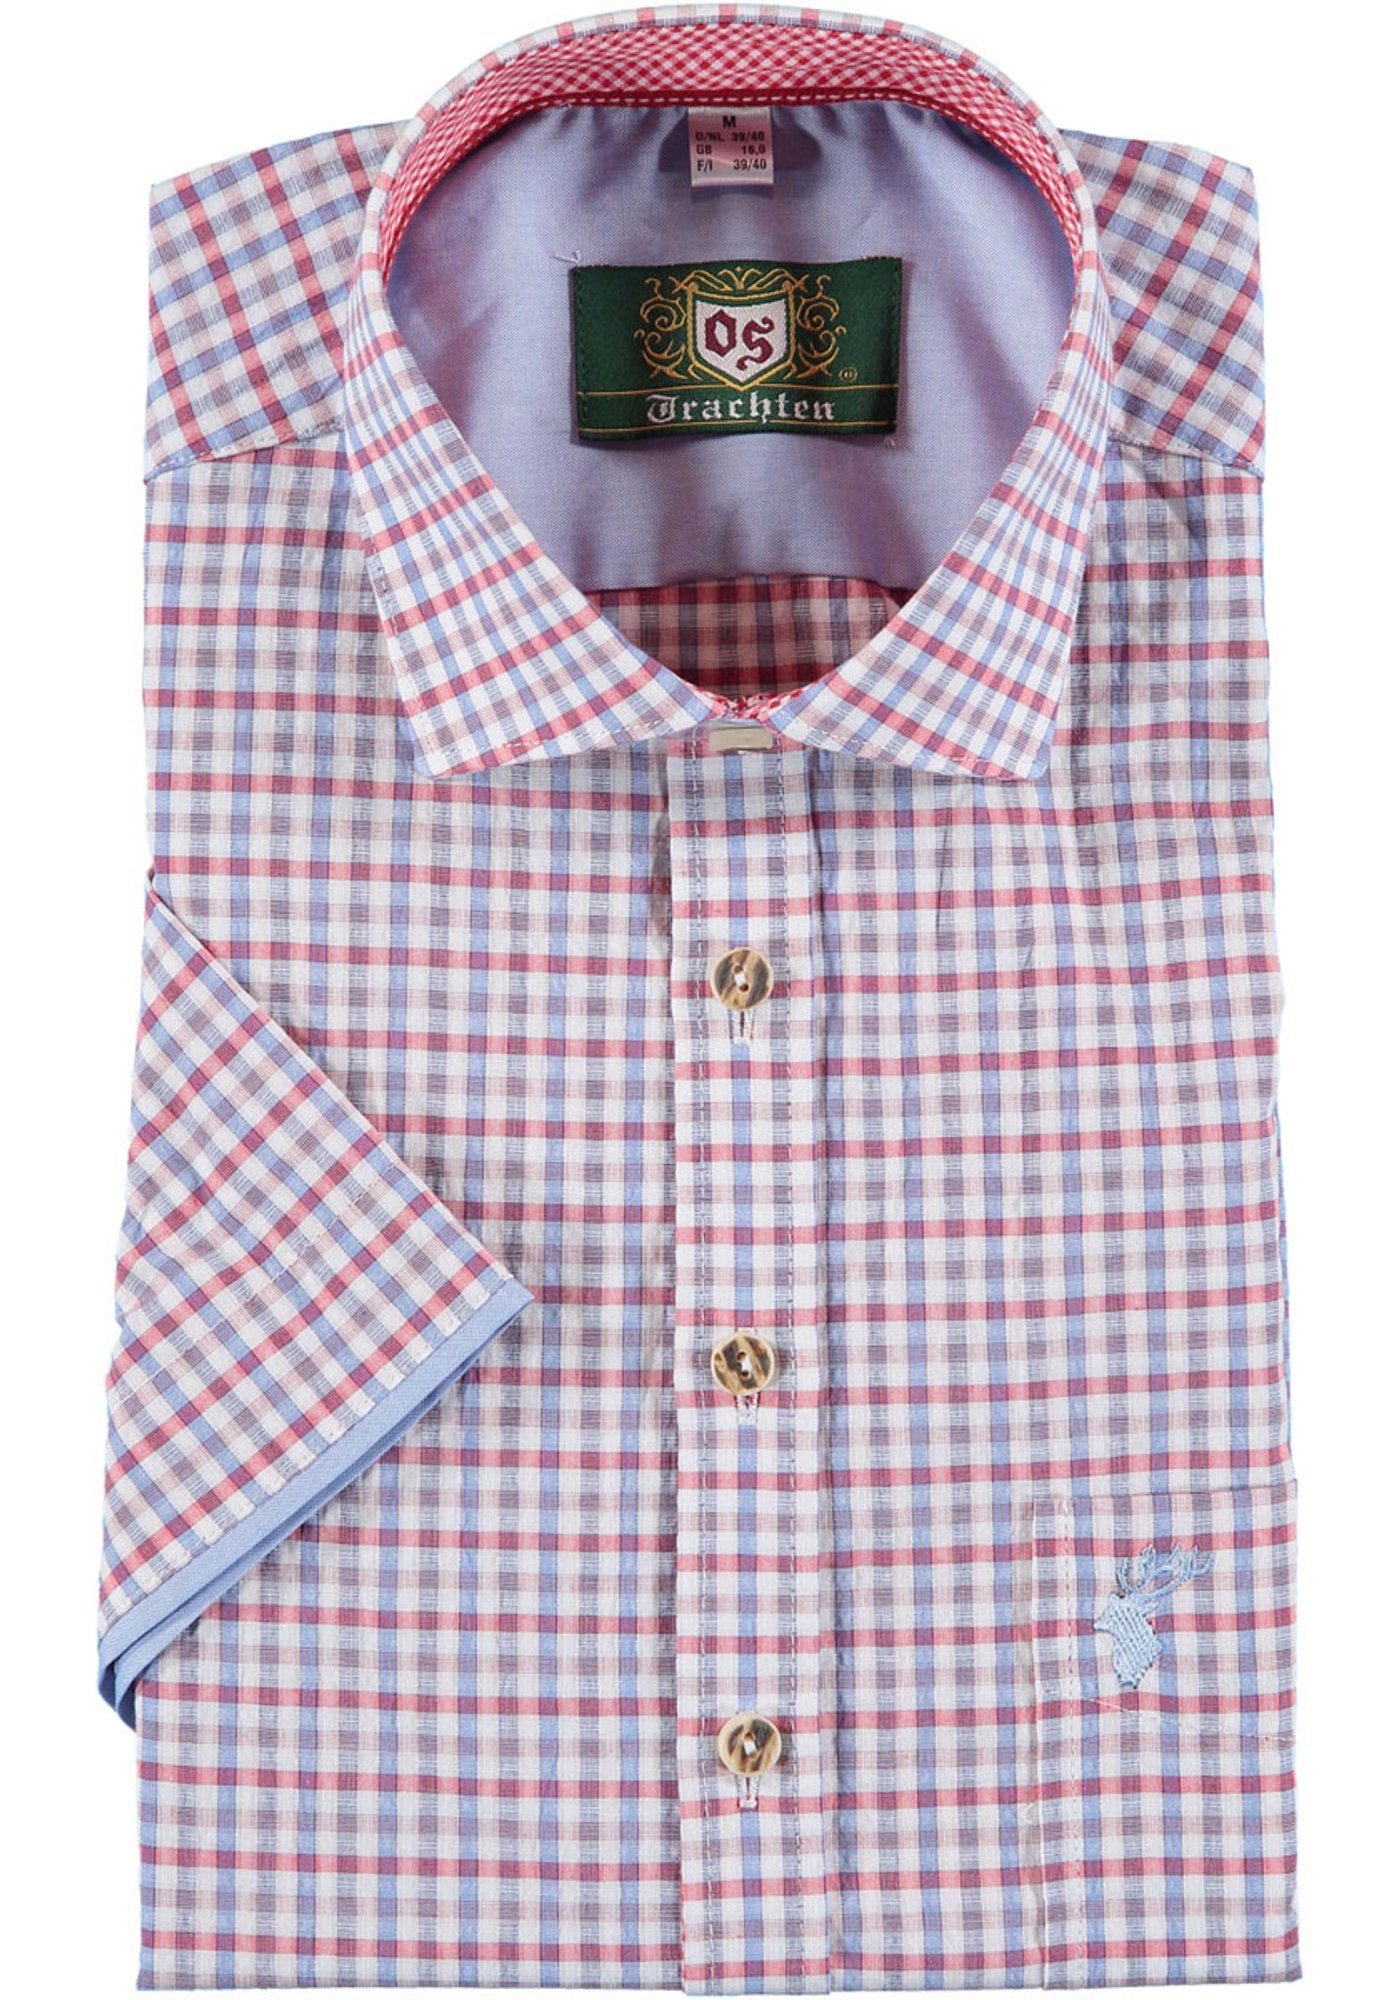 OS-Trachten Trachtenhemd Gafoo Herren Kurzarmhemd mit Hirsch-Stickerei auf der Brusttasche mittelrot